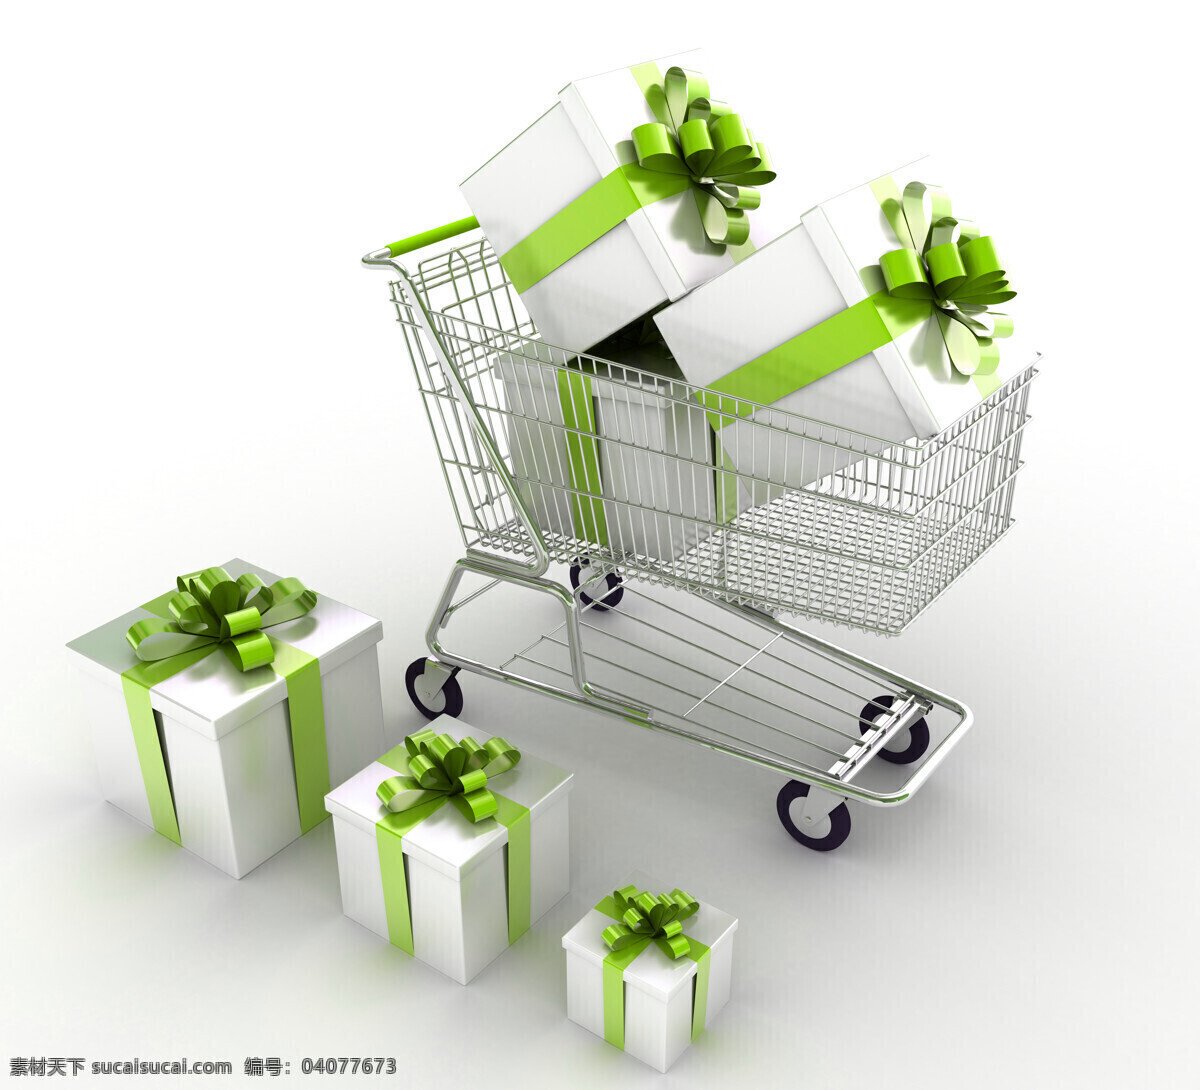 购物车 礼物 盒 购物车图片 礼物盒图片 白色礼物盒 盒子 推车 绿色丝带